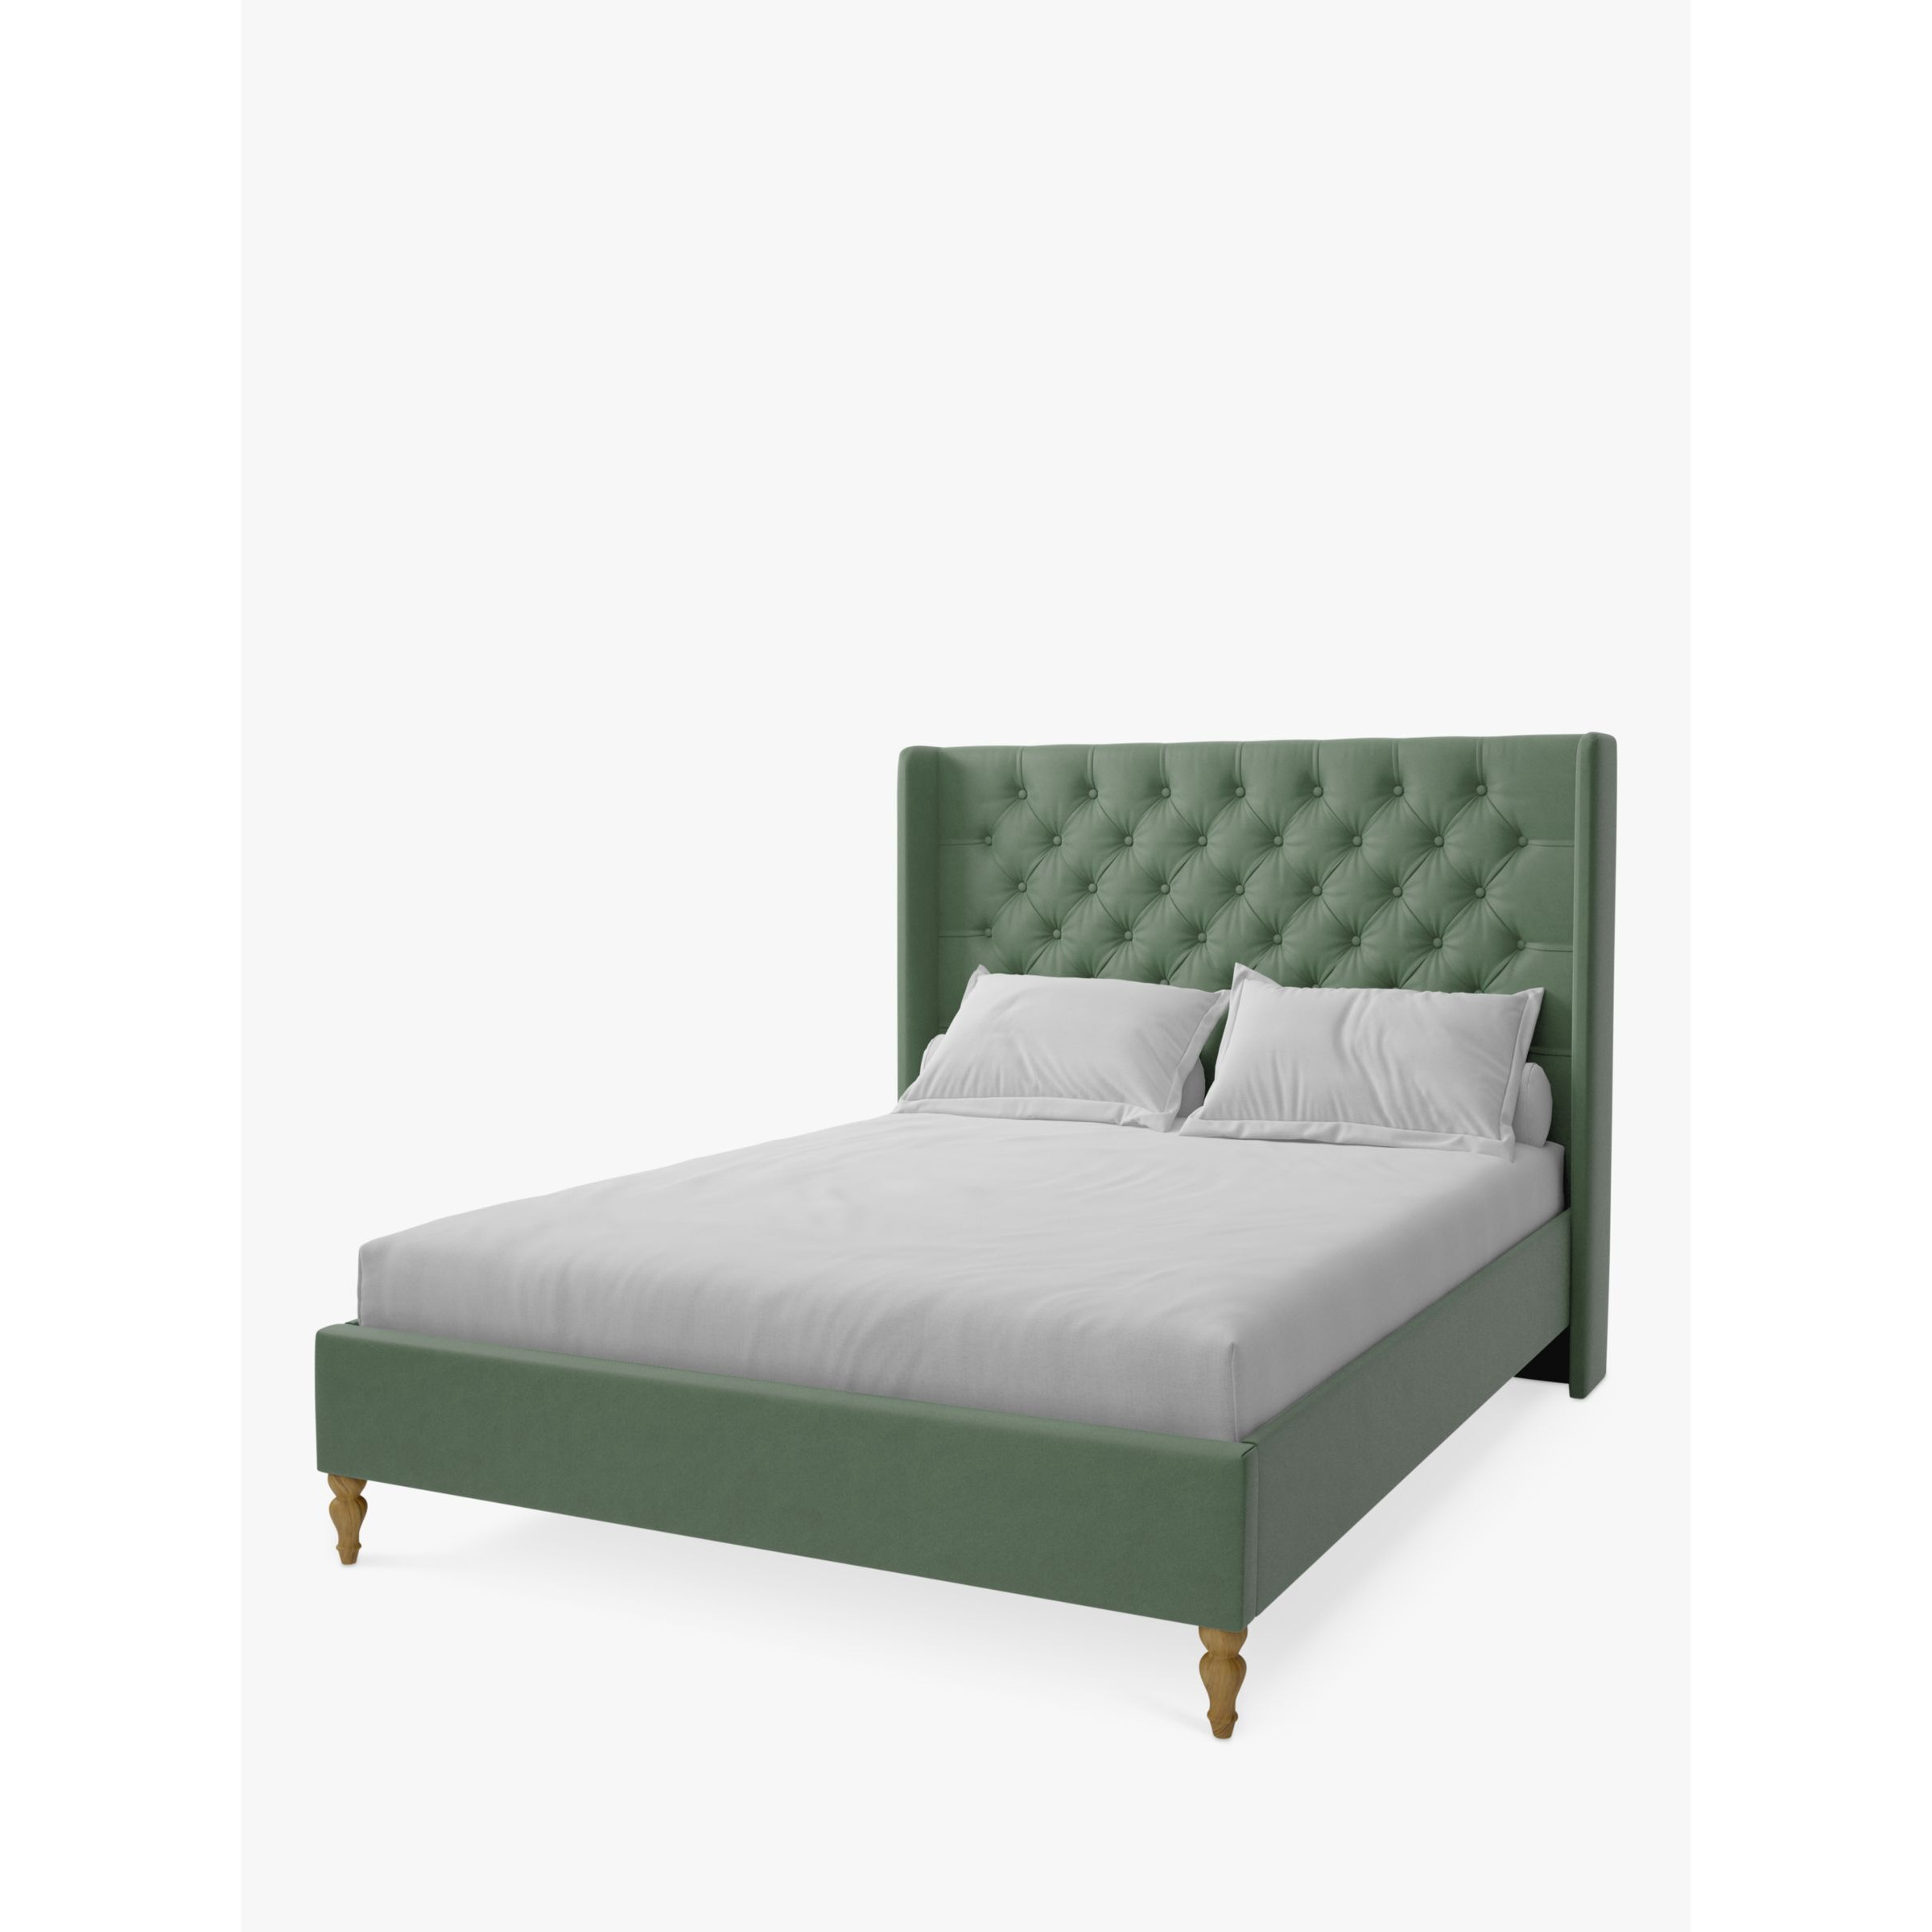 Koti Home Astley Upholstered Bed Frame, King Size - image 1